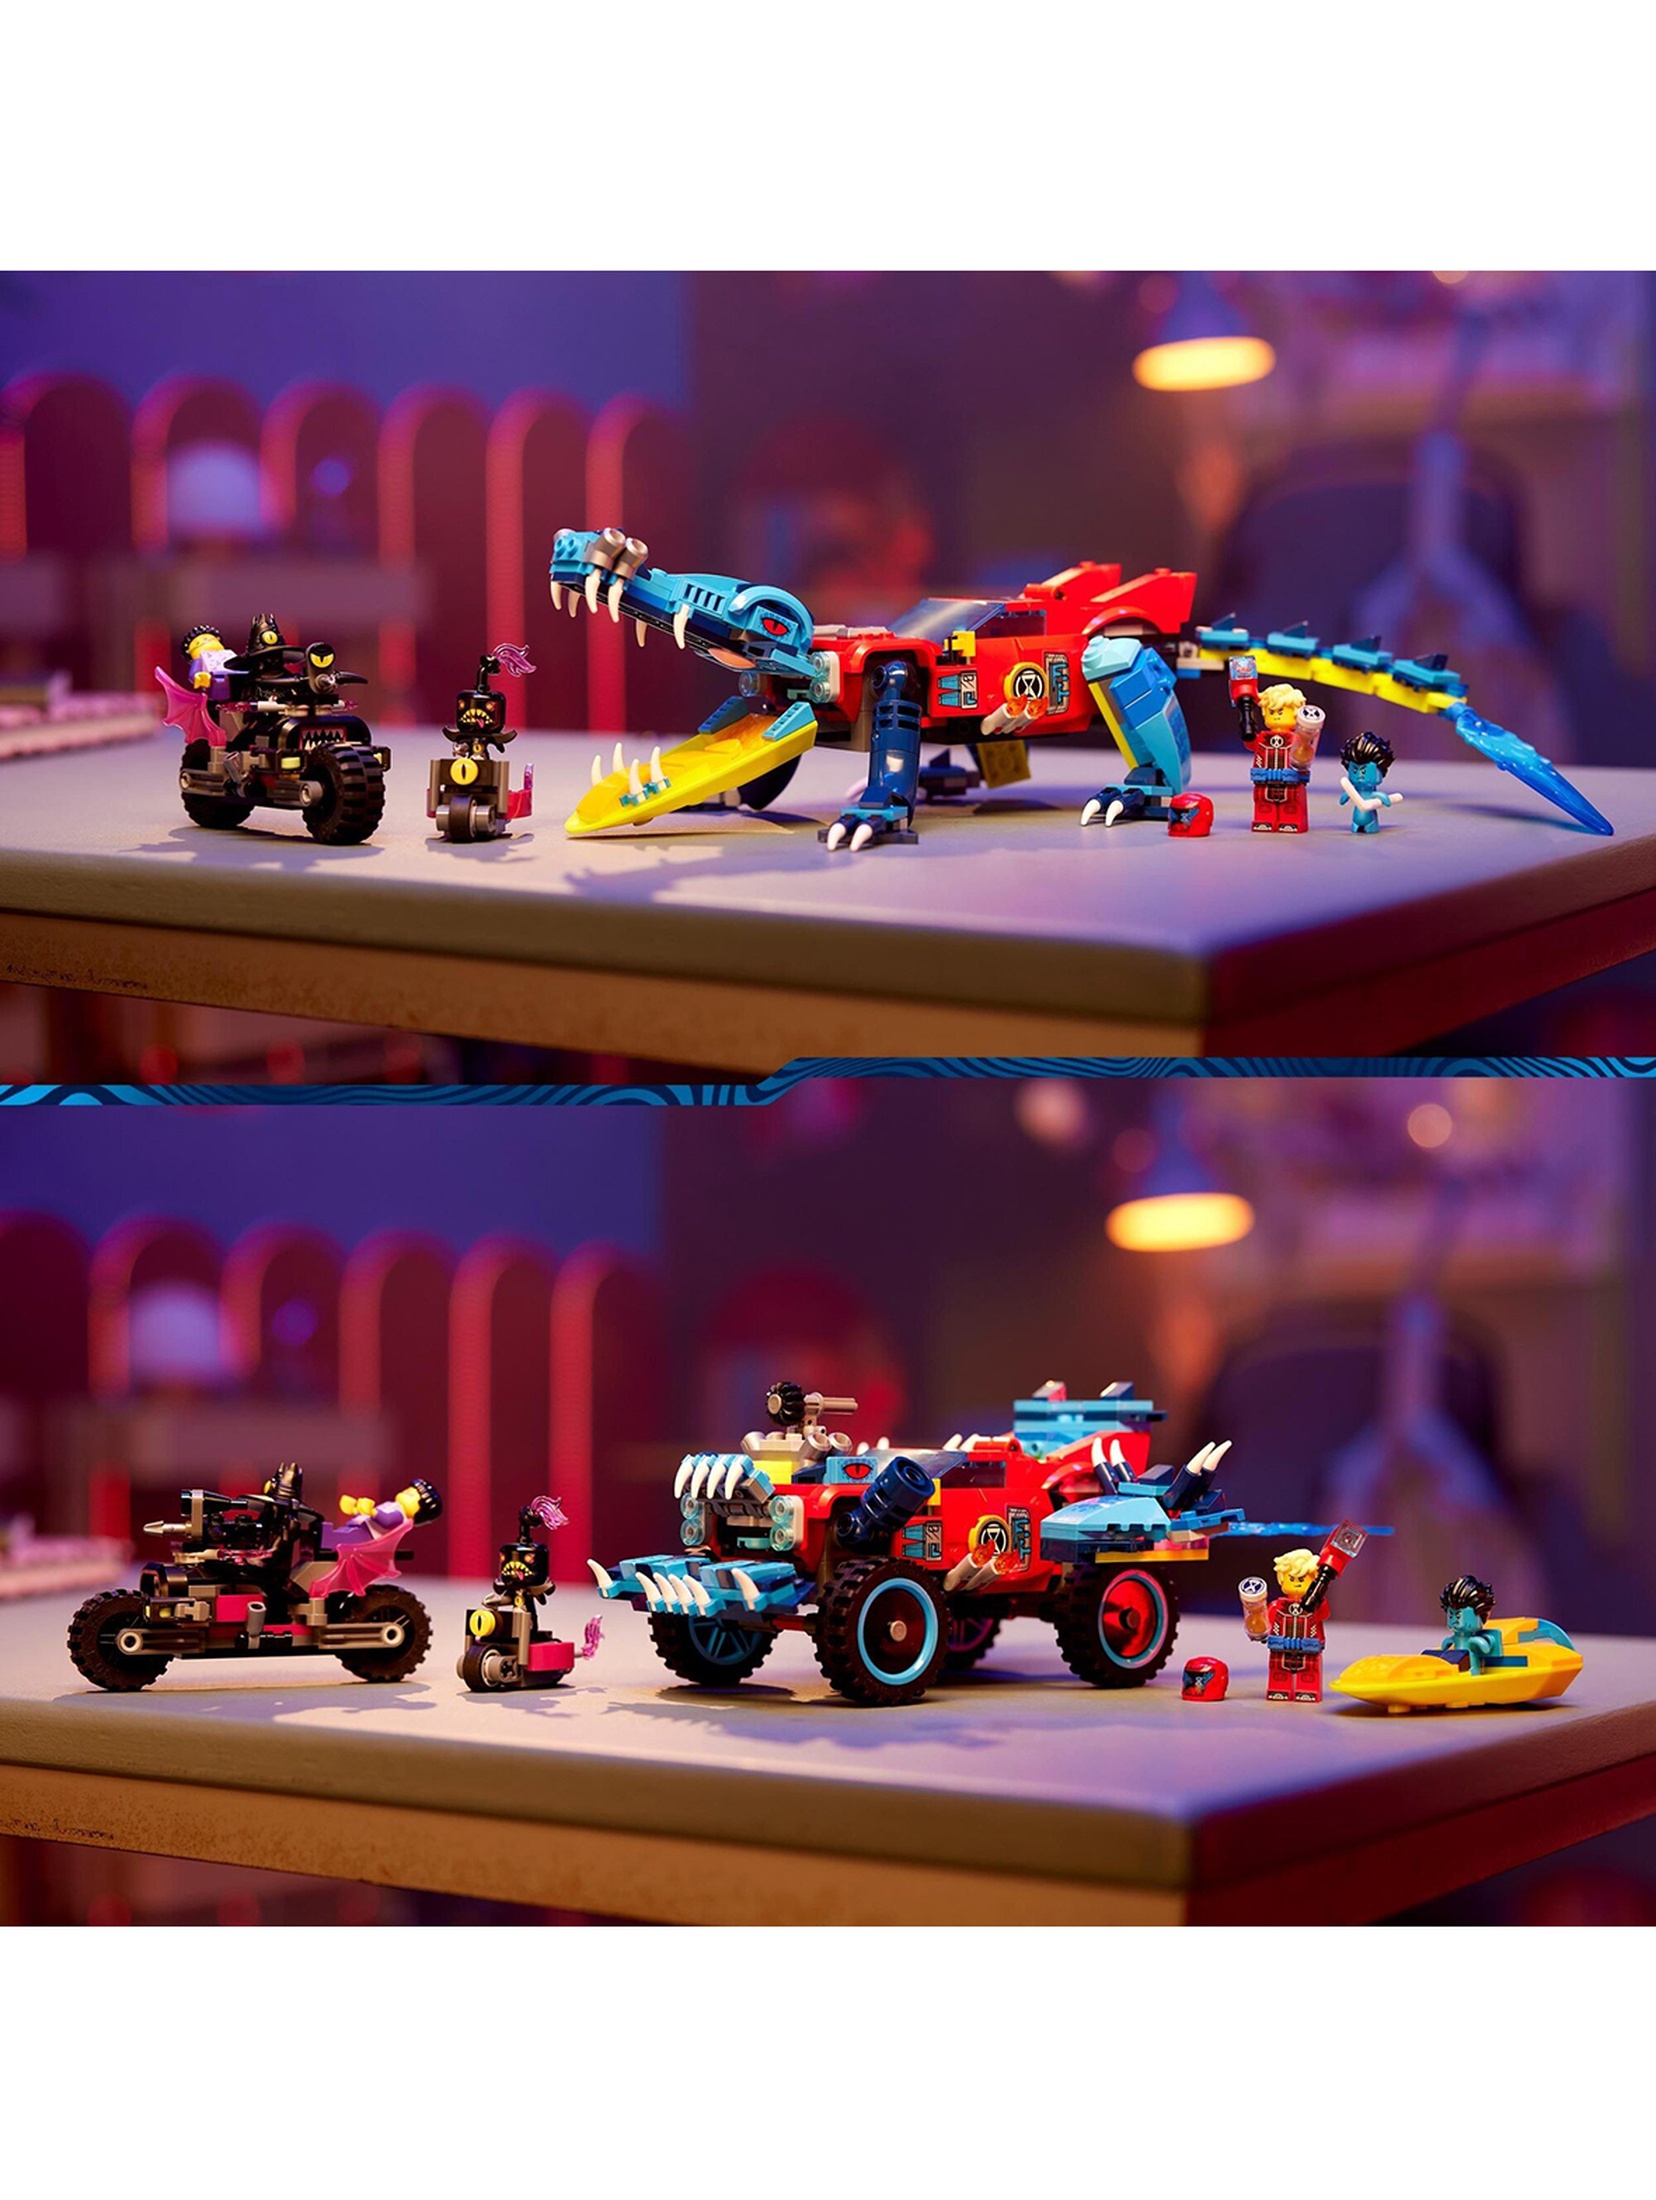 Klocki LEGO DREAMZzz 71458 Krokodylowy samochód - 494 elementy, wiek 8 +